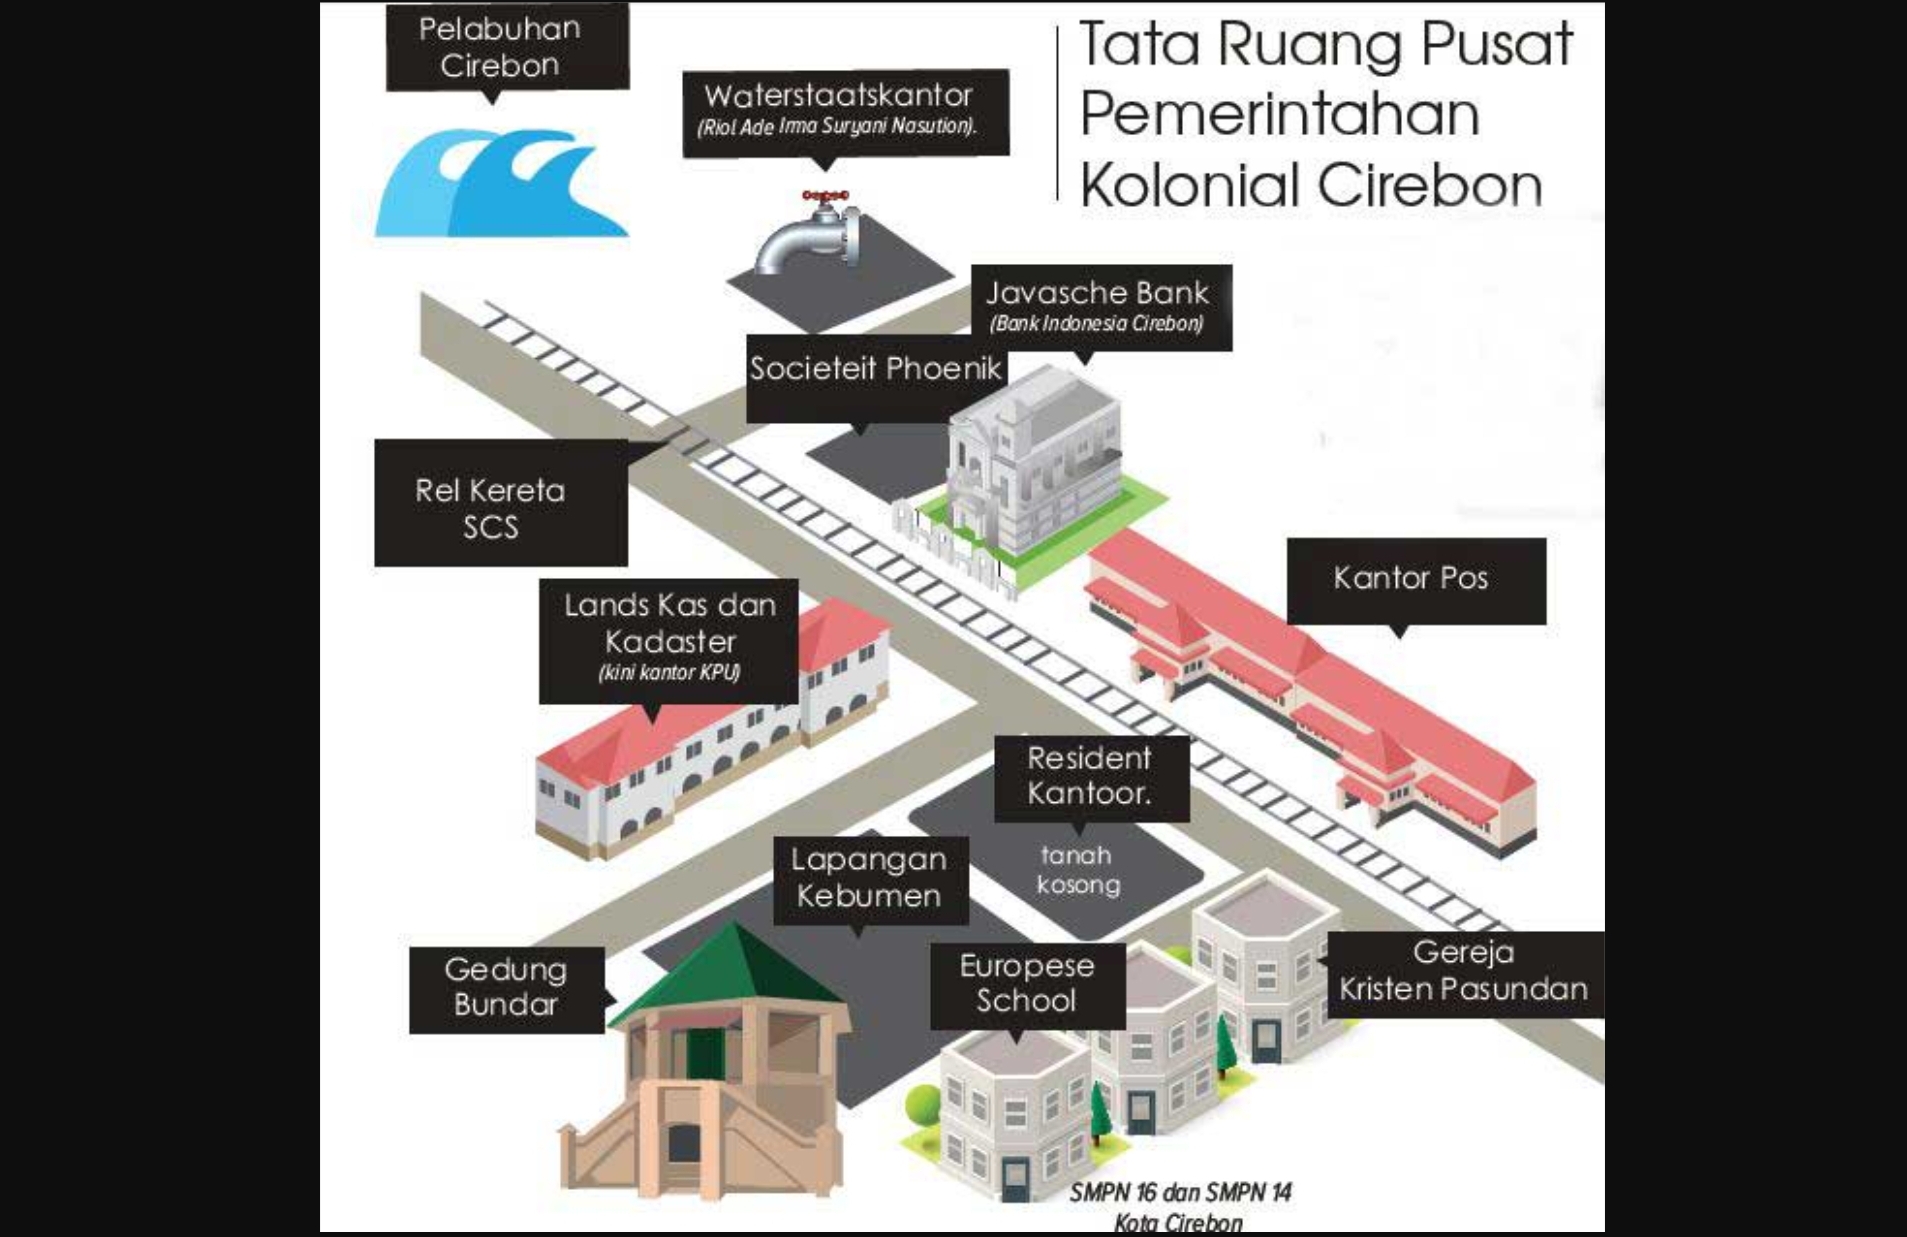 Sejarah Gedung Bundar di Lapangan Kebumen Cirebon yang Bakal Direvitalisasi Pemerintah, Dulu Menara Pengawas